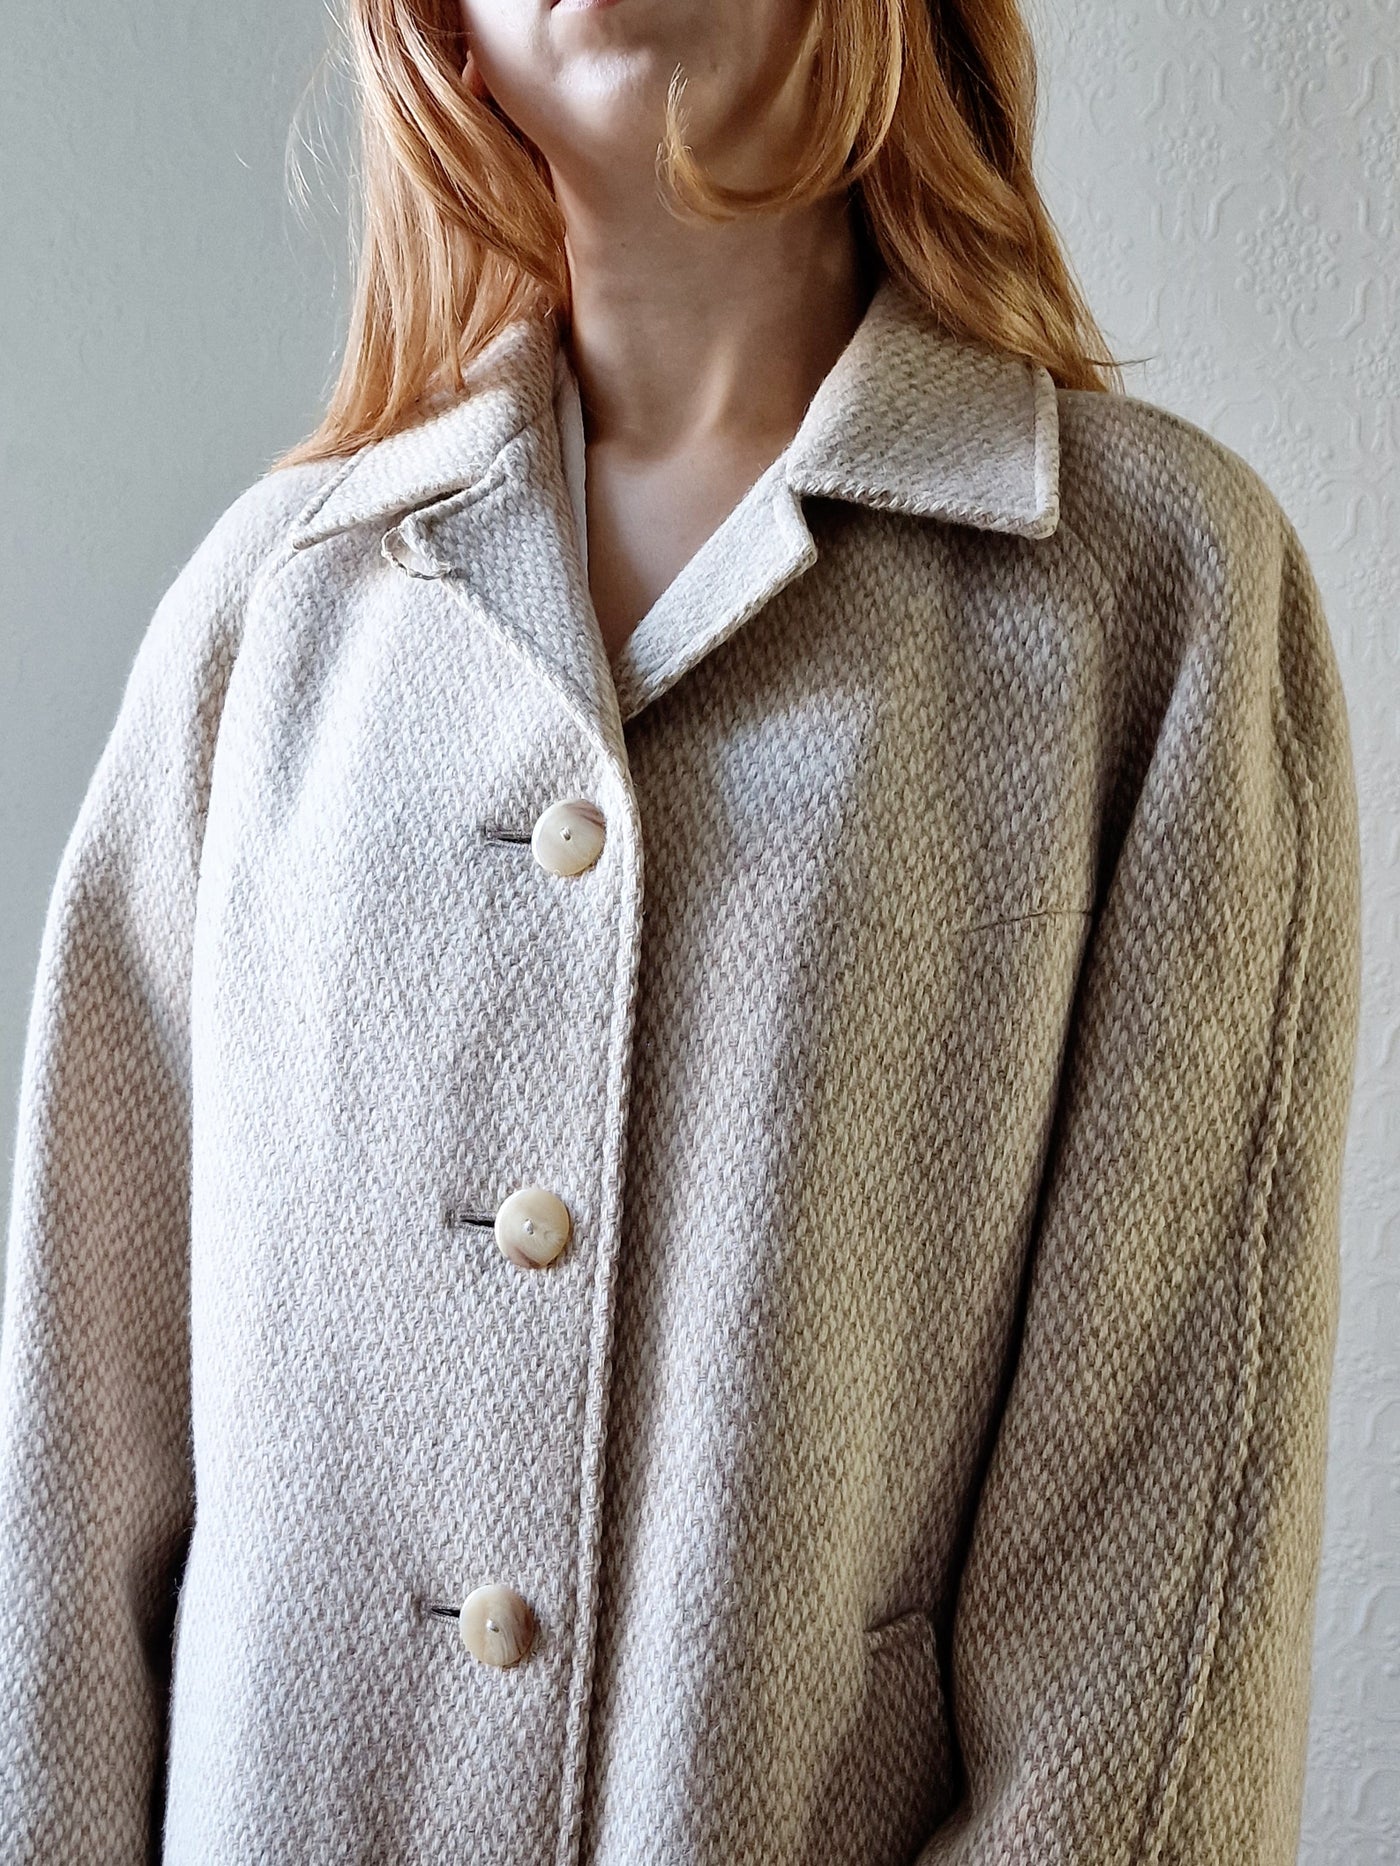 Vintage 80s Cream & Beige Single Breasted Wool Coat - M